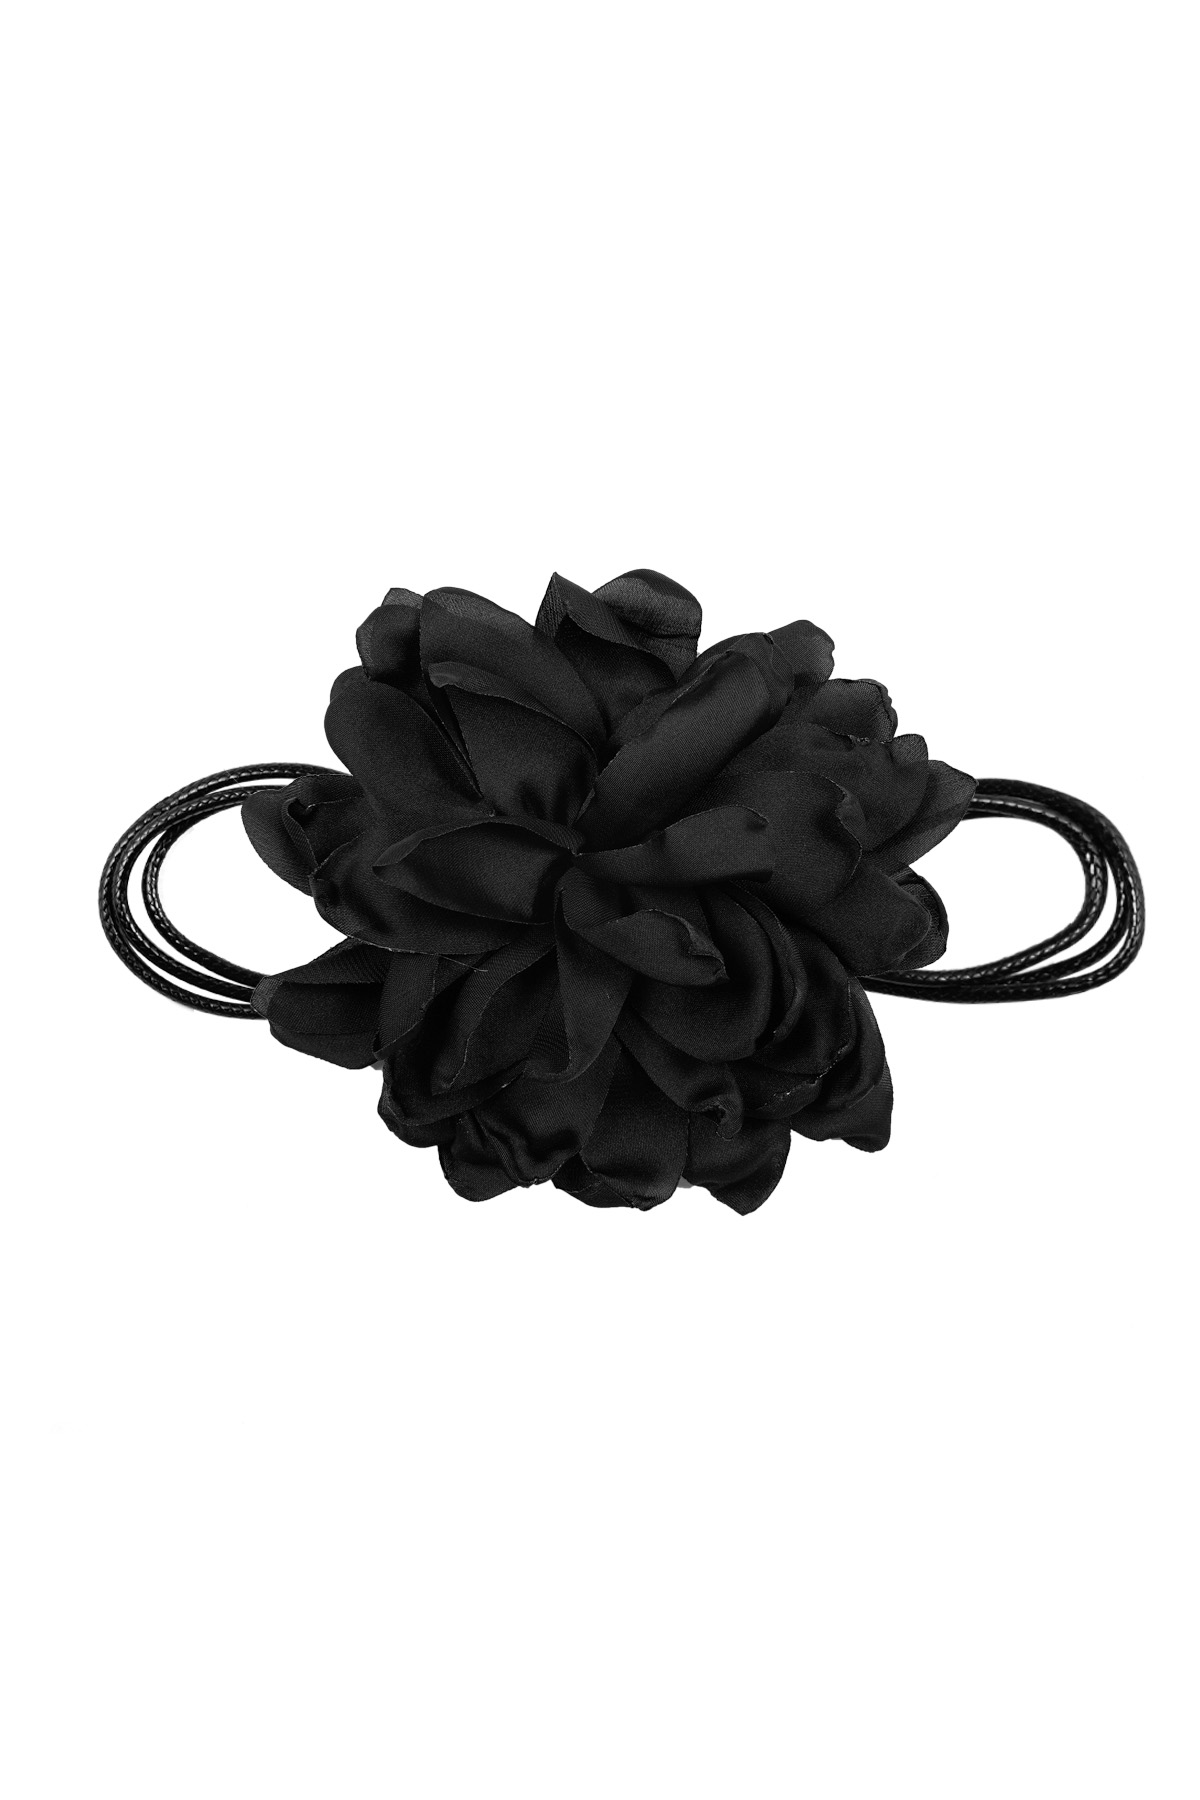 Collier grande fleur - noir h5 